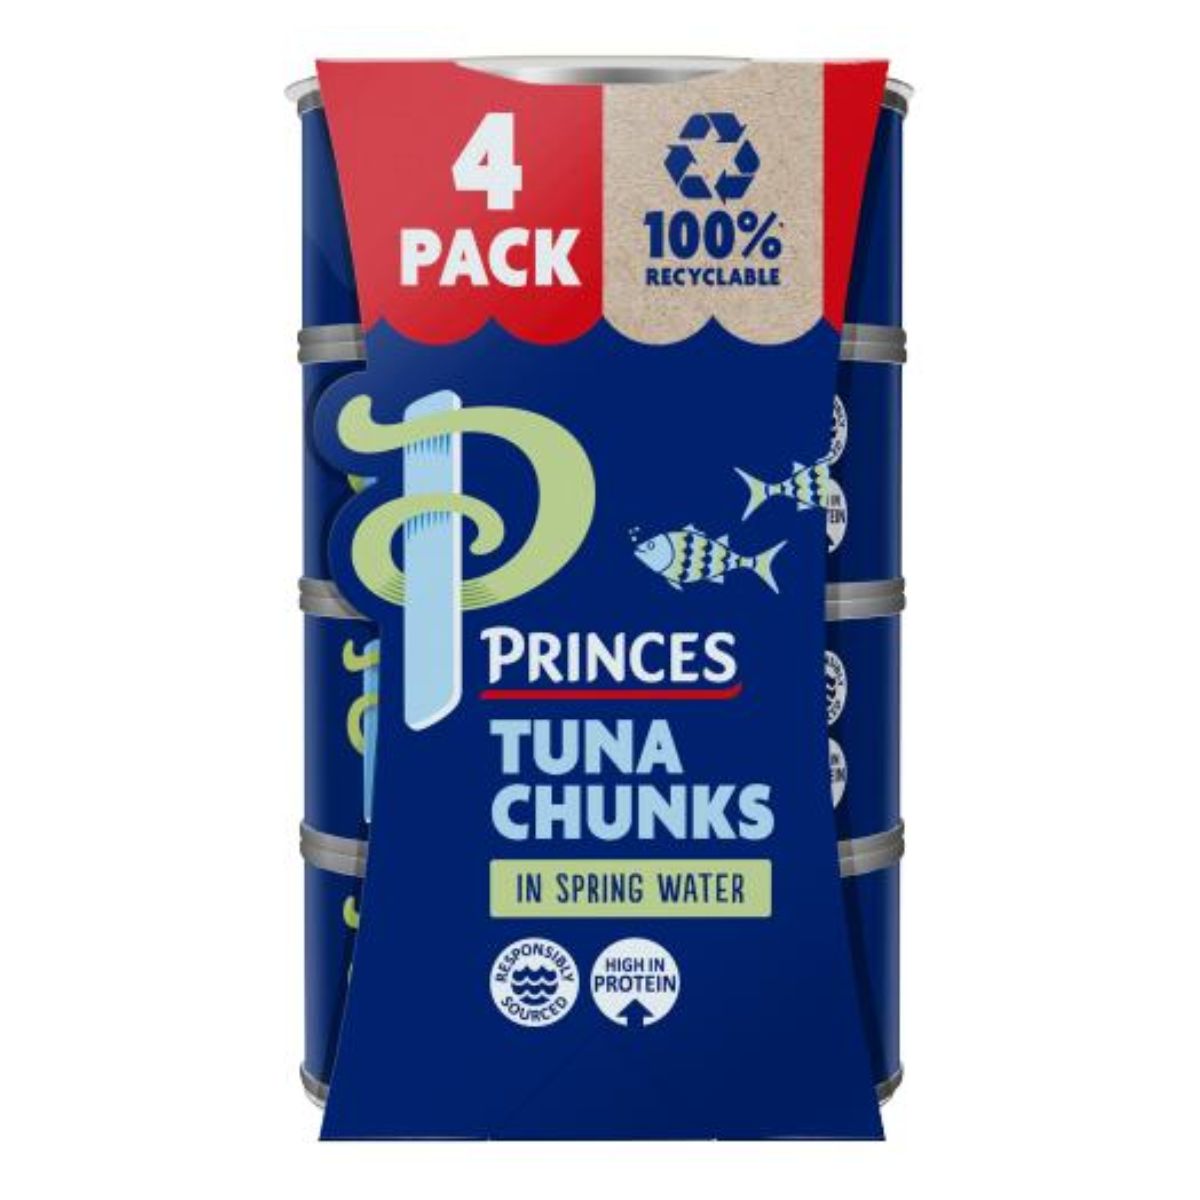 Princes - Tuna Chunks in Spring Water - 4 x 145g.